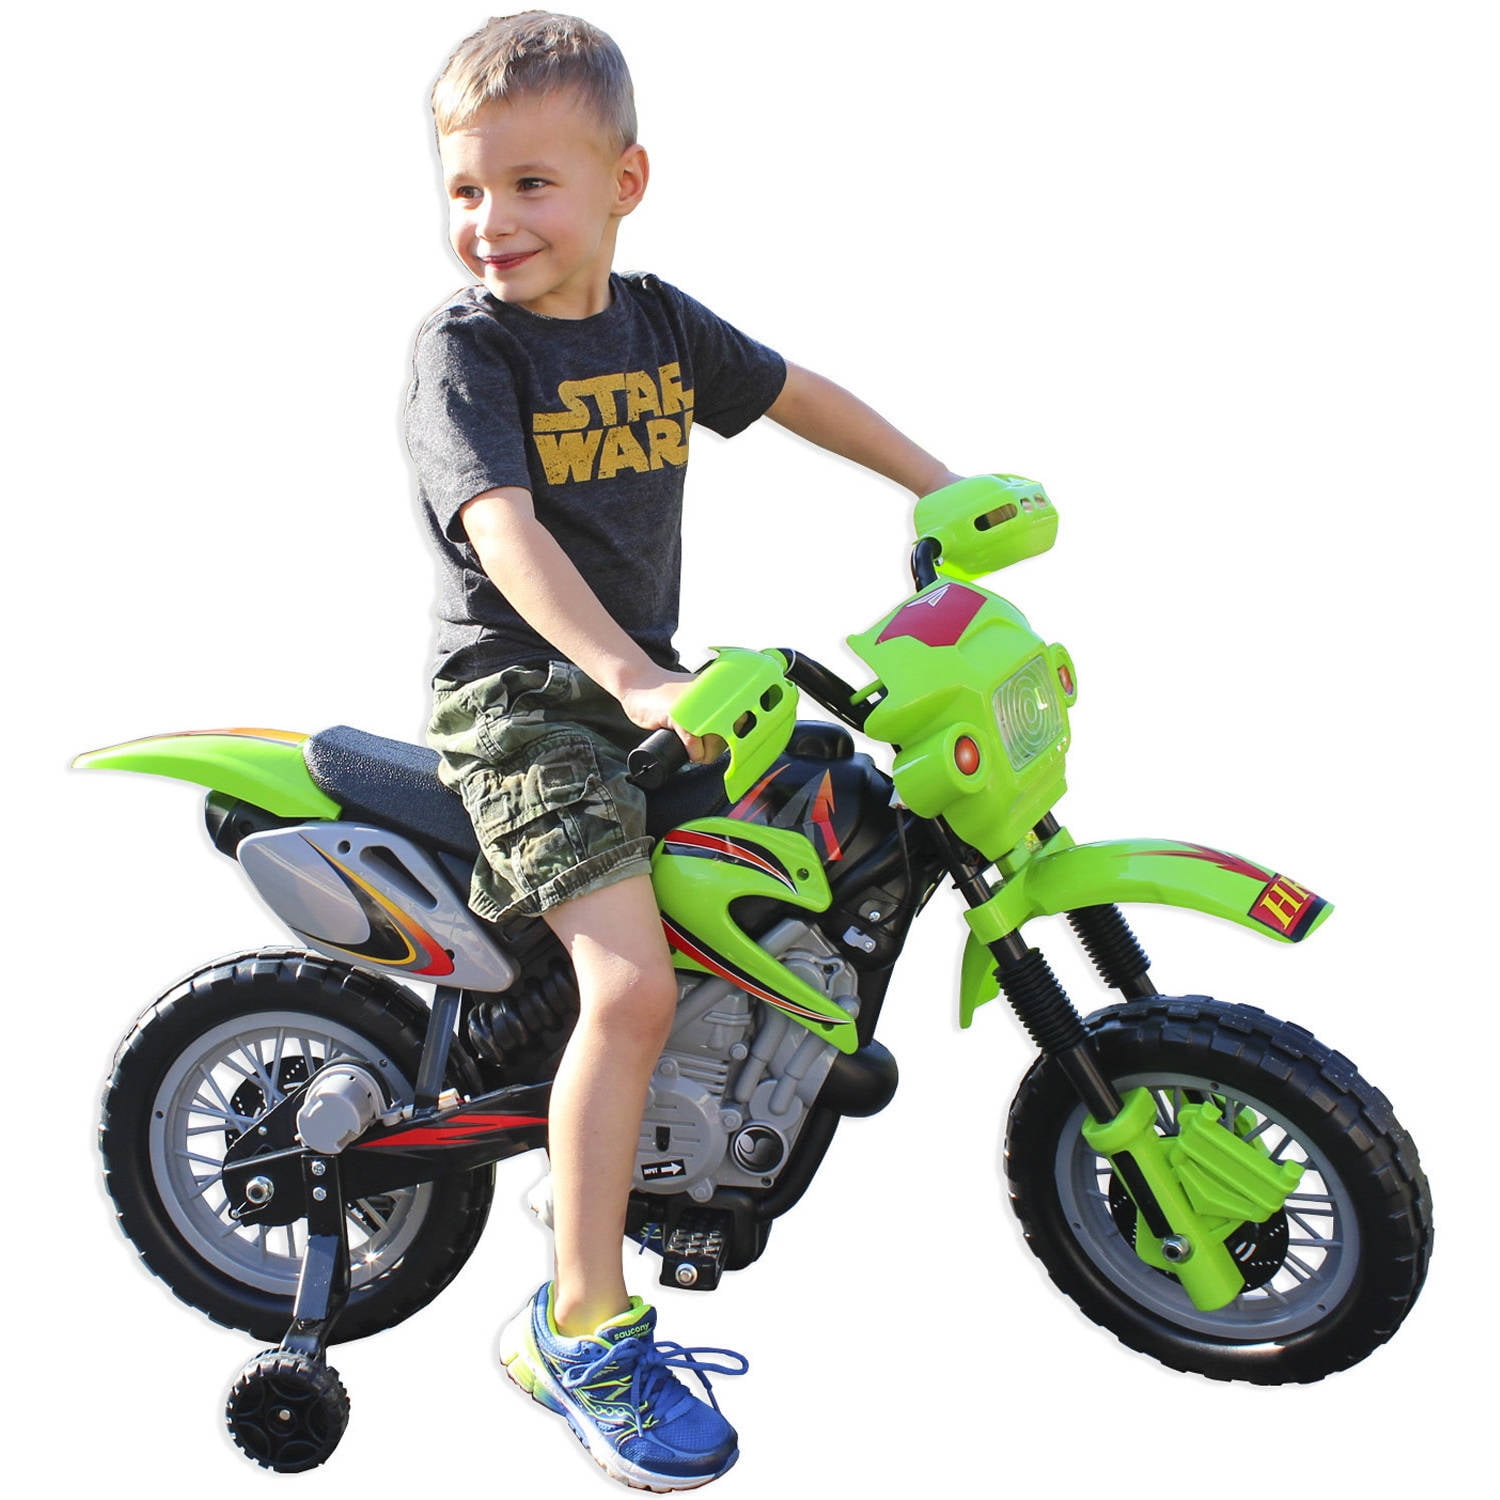 Kids' Motorcycle - Walmart.com